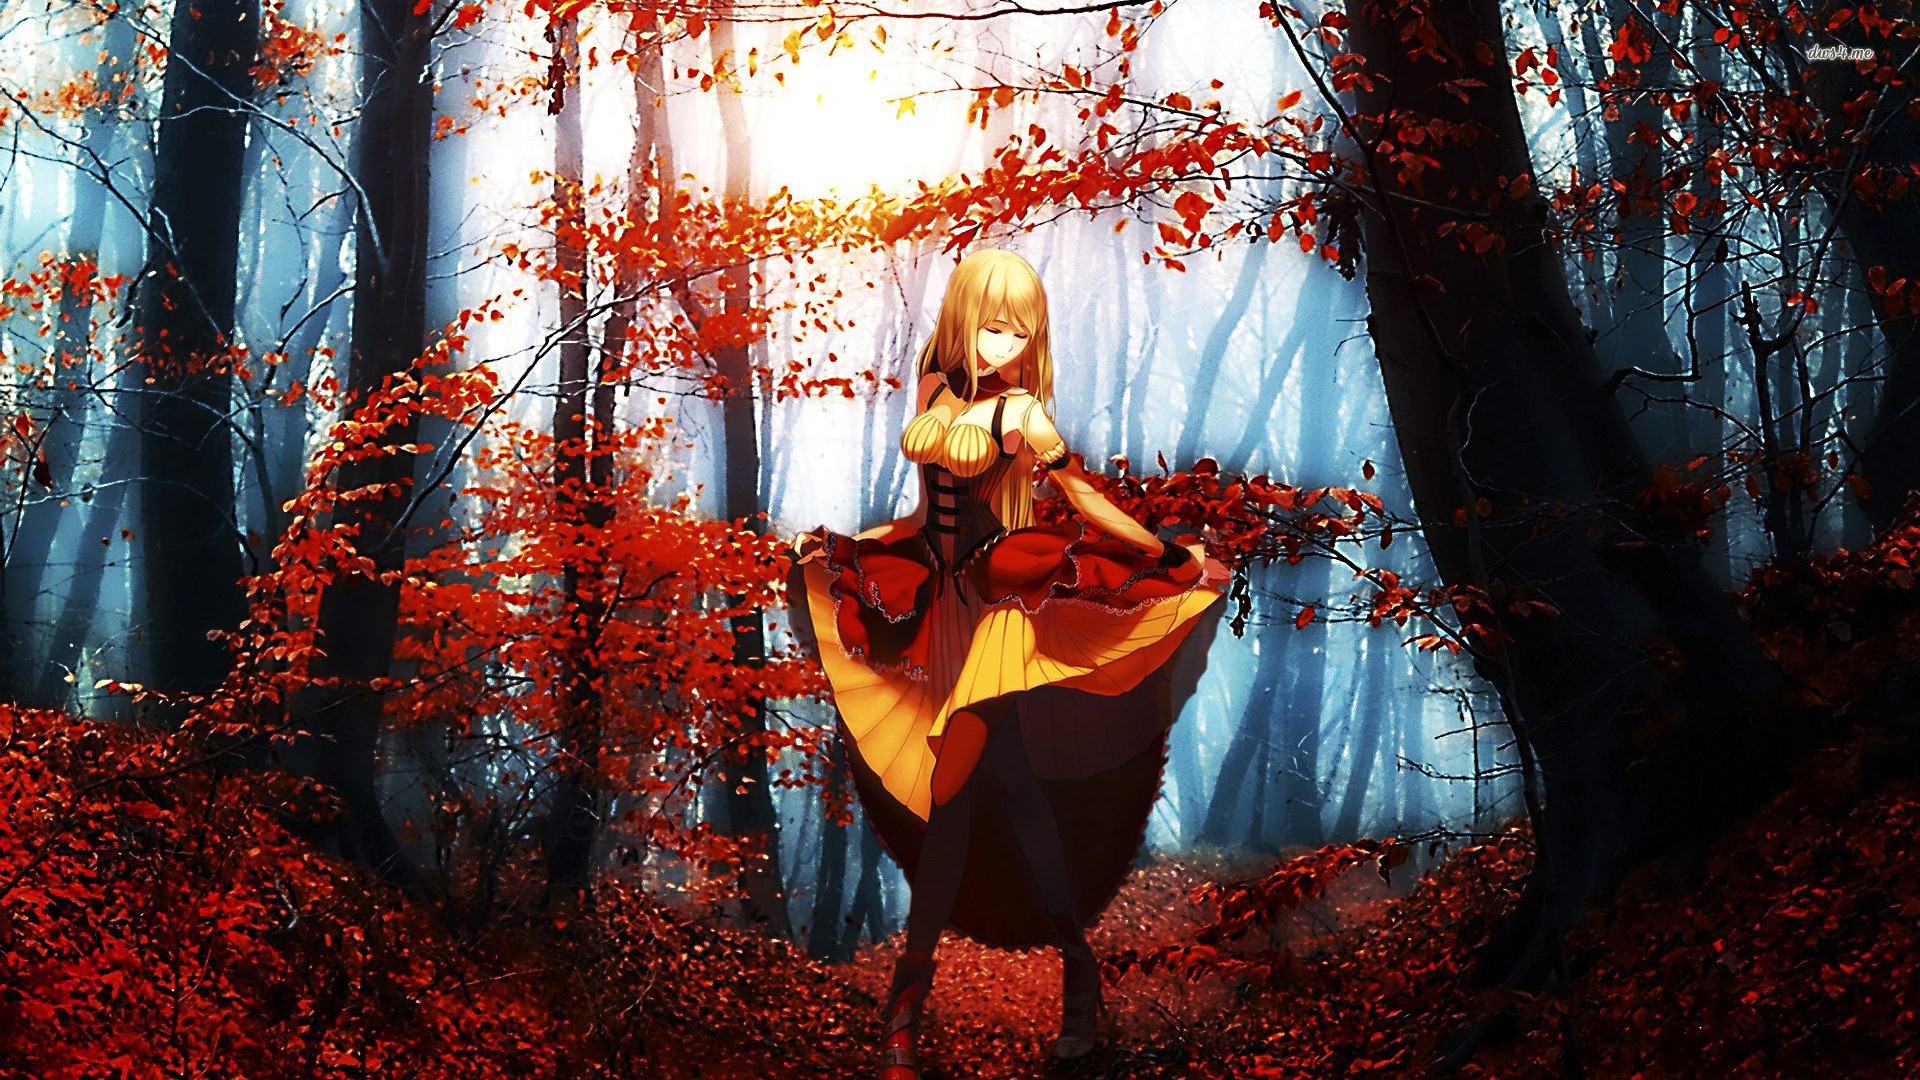 Anime 1920x1080 anime anime girls dress forest blonde fantasy art fantasy girl fall trees standing closed eyes